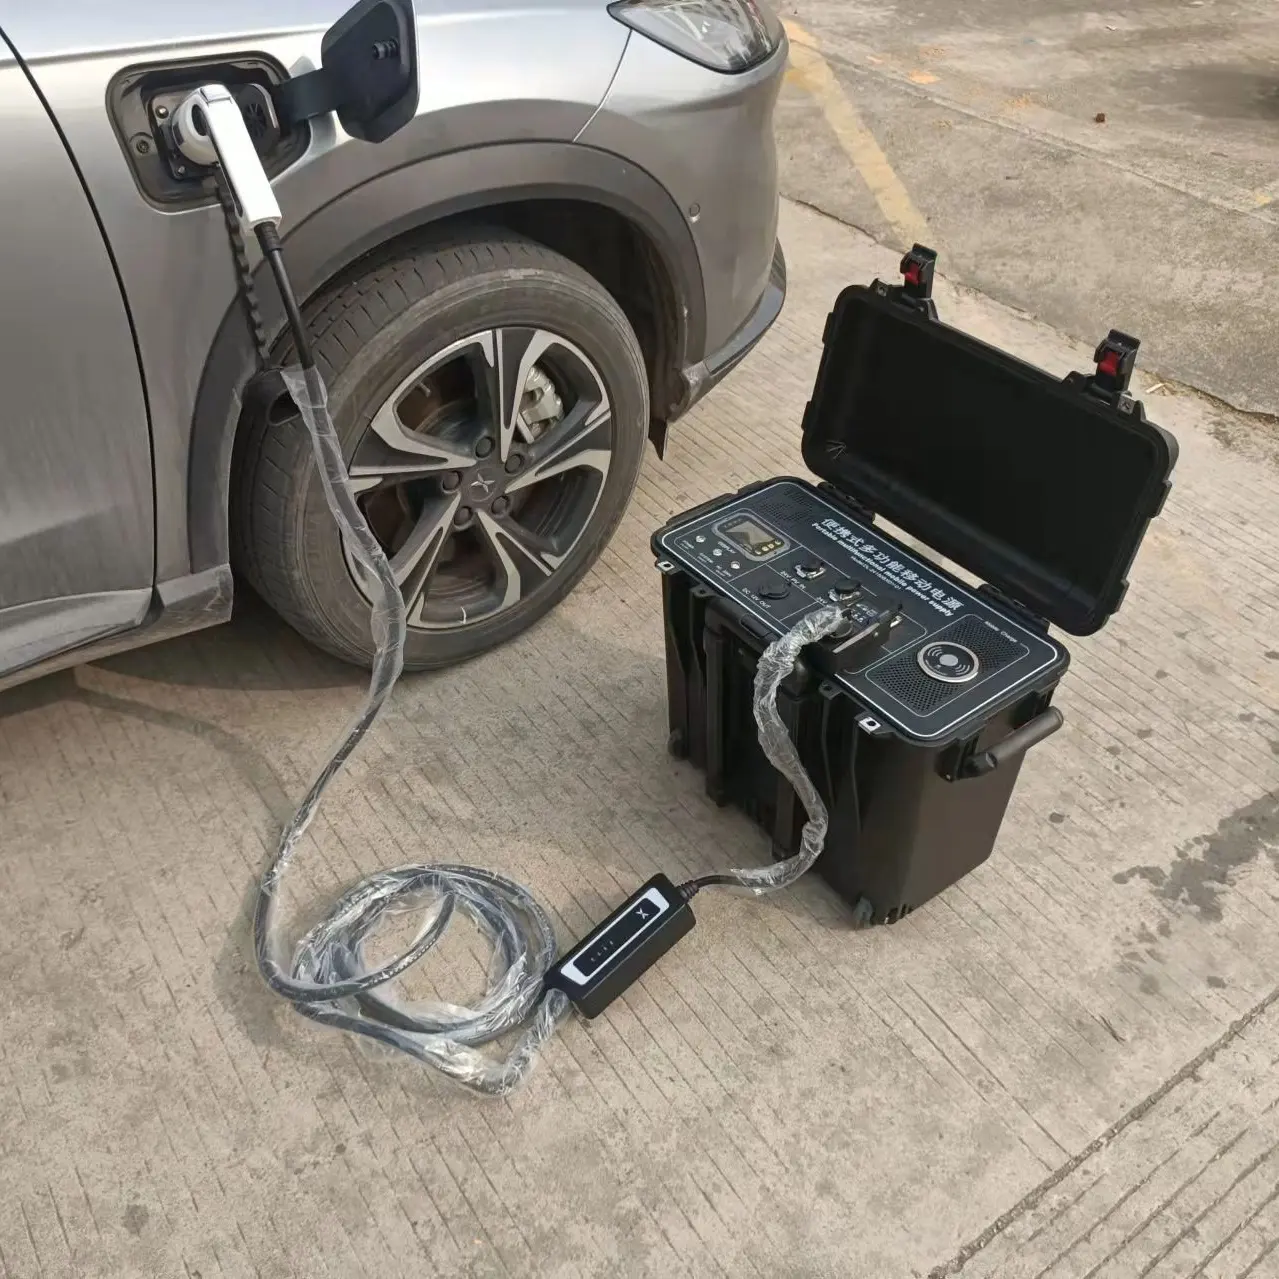 XIAOFU Portable 8KW EV chargeur rapide 4kwh ev power bank ac dc chargeur pour voiture électrique